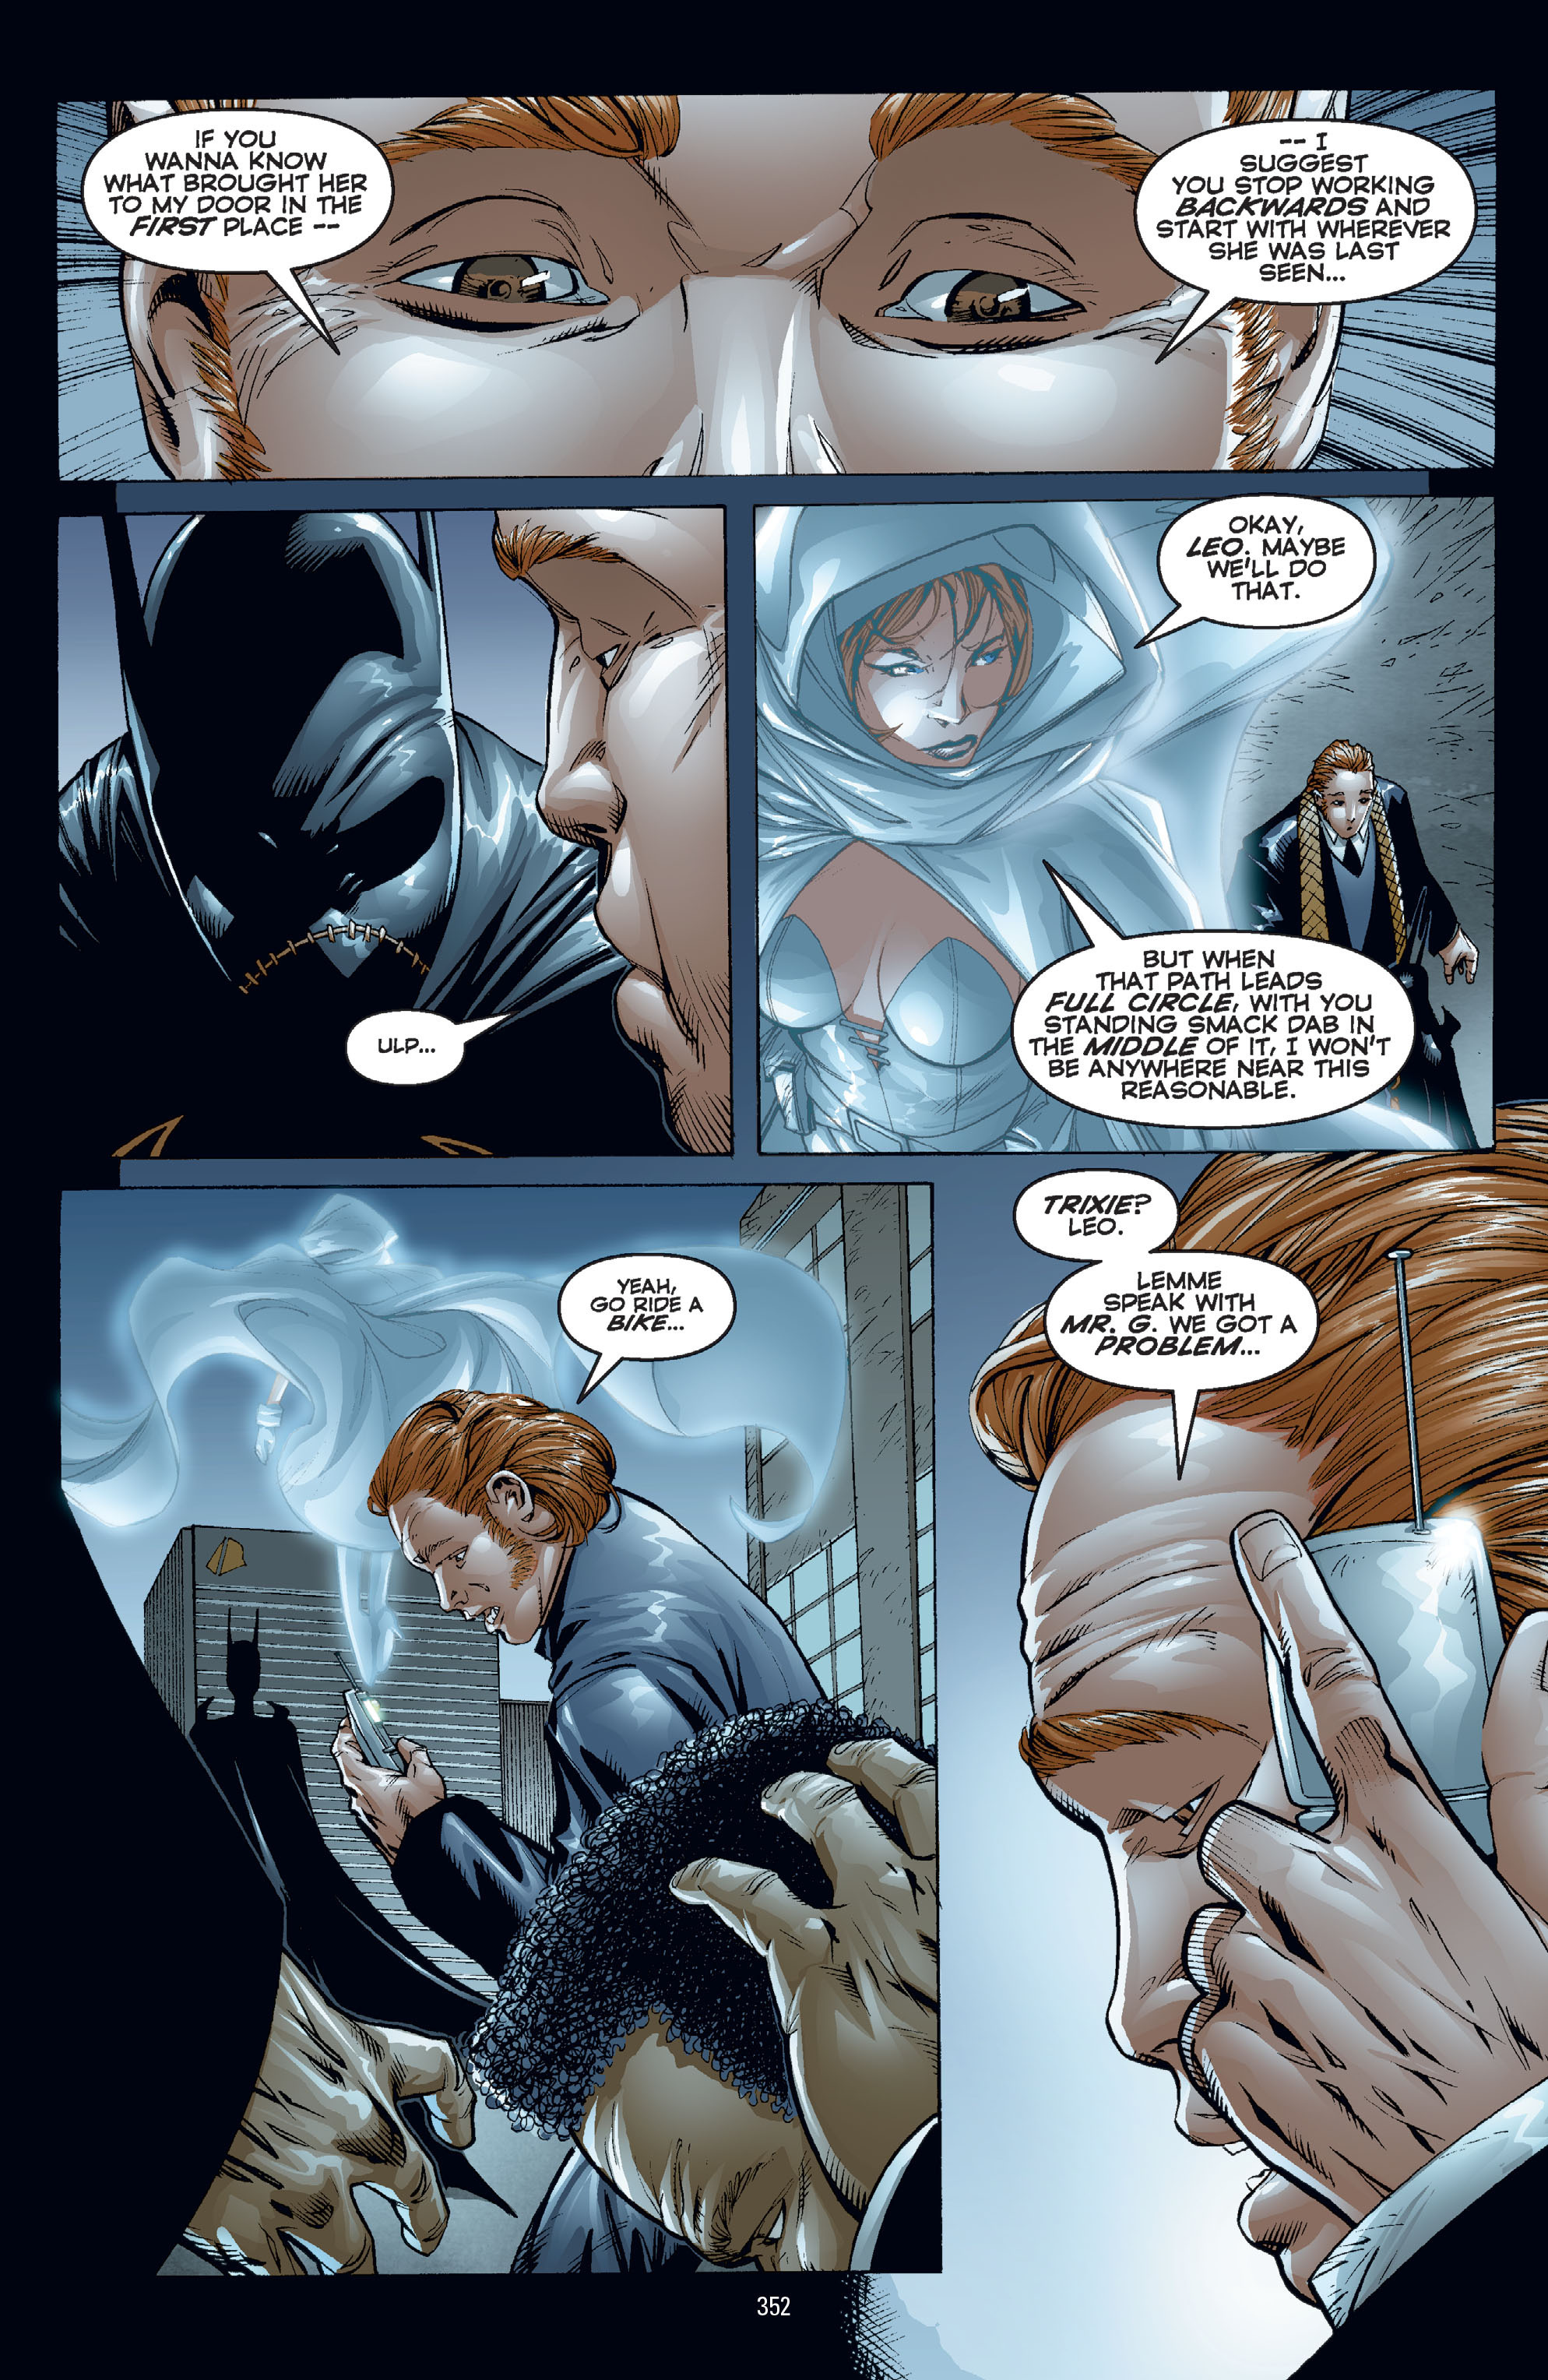 DC Comics/Dark Horse Comics: Justice League Full #1 - English 342